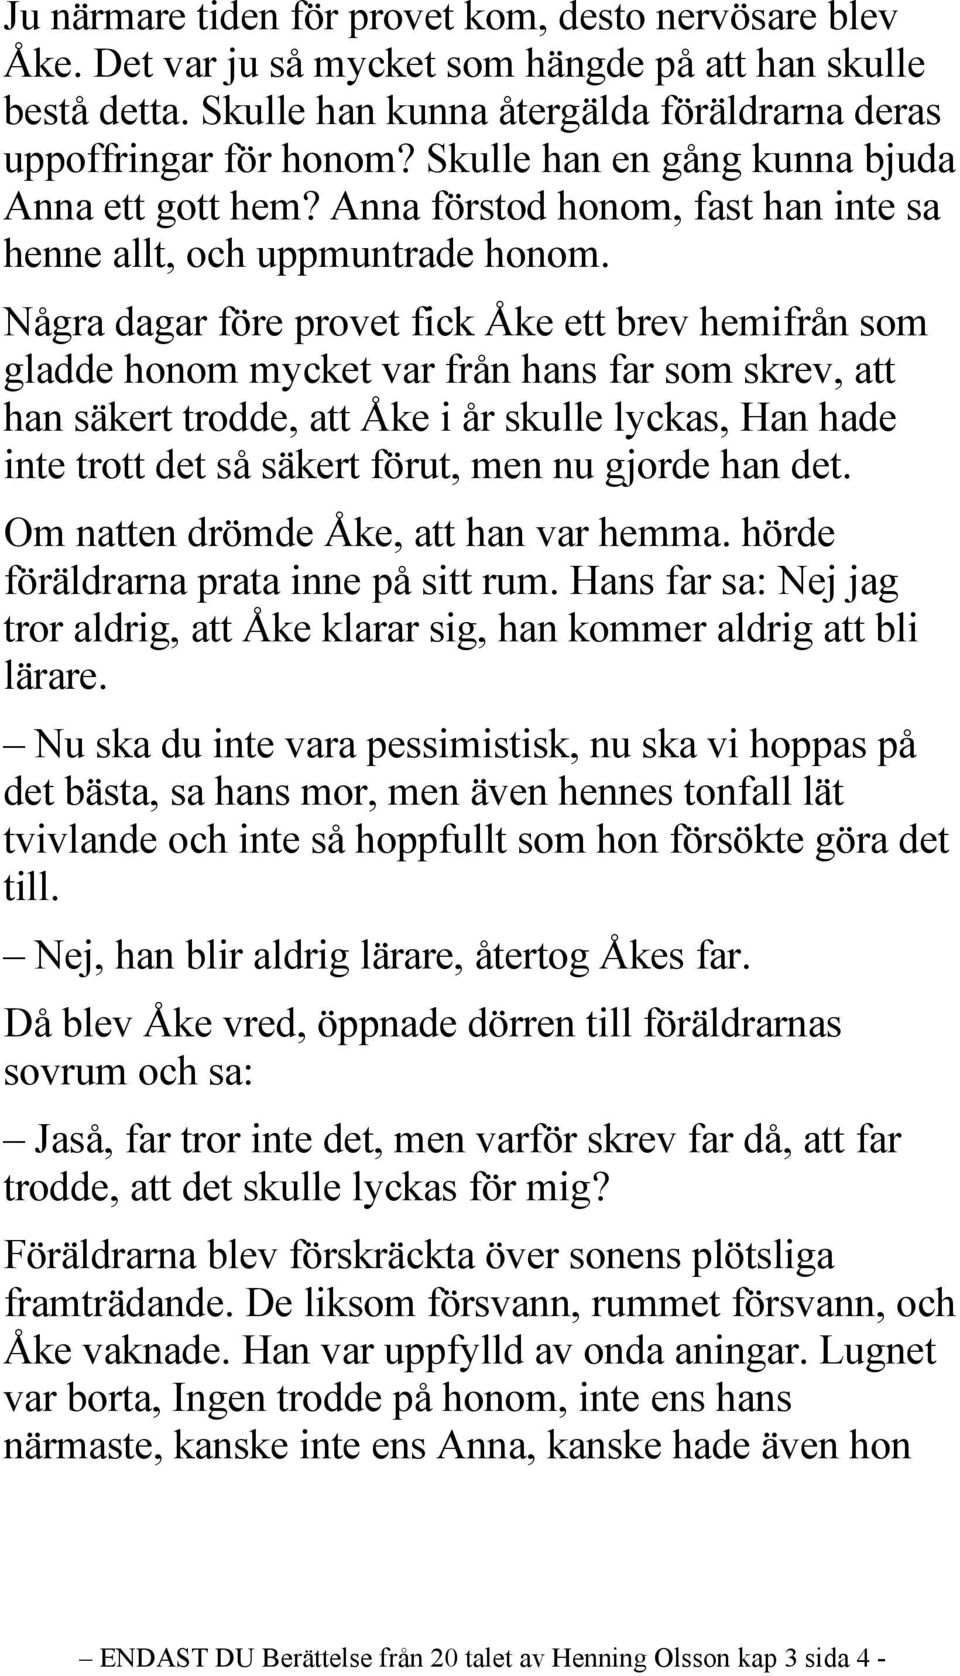 Några dagar före provet fick Åke ett brev hemifrån som gladde honom mycket var från hans far som skrev, att han säkert trodde, att Åke i år skulle lyckas, Han hade inte trott det så säkert förut, men